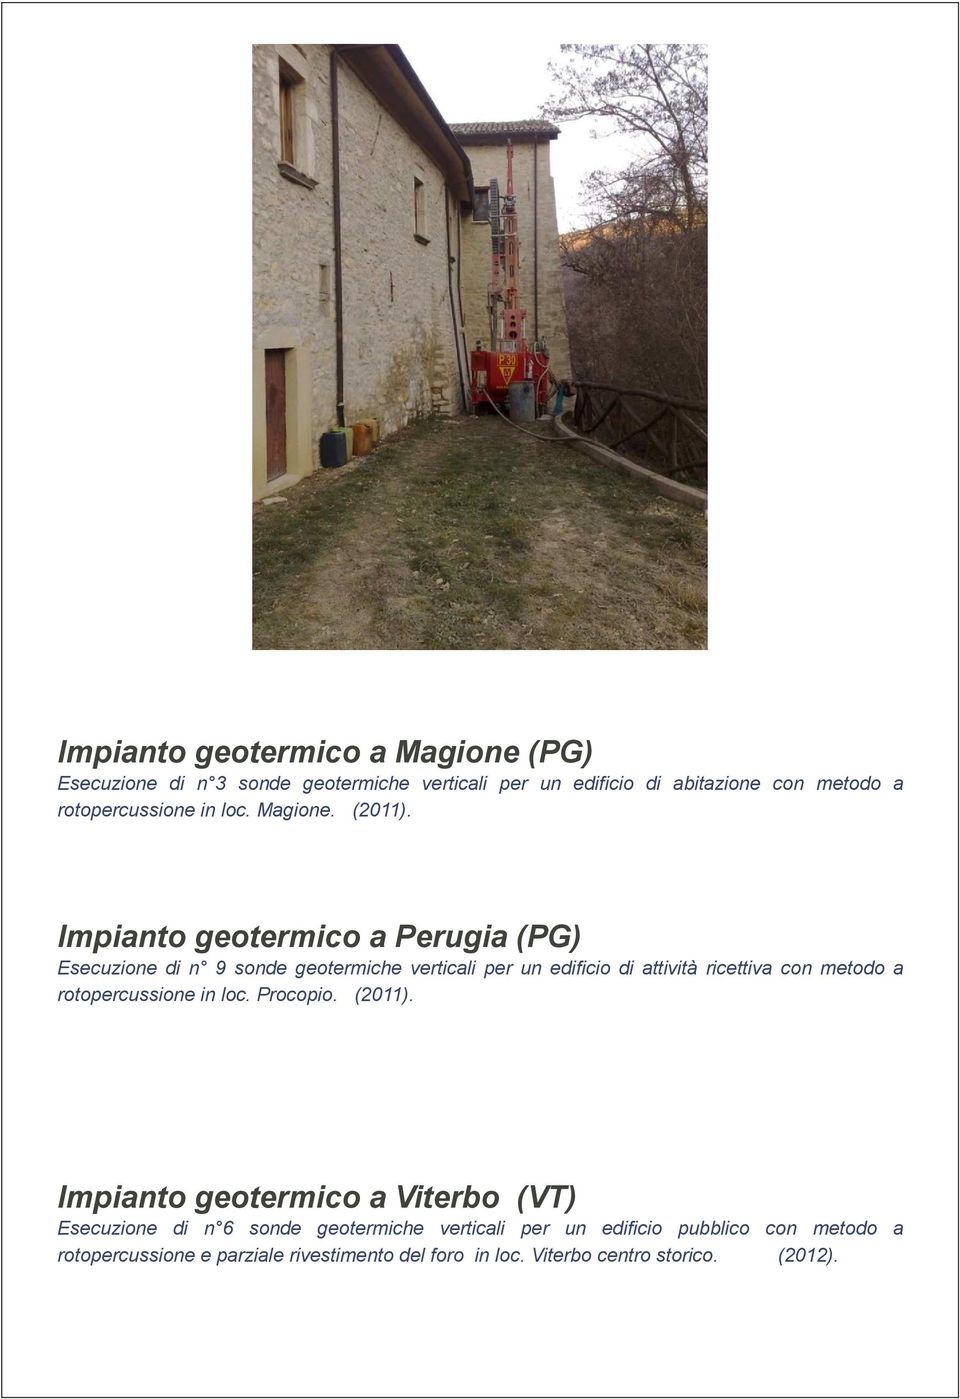 Impianto geotermico a Perugia (PG) Esecuzione di n 9 sonde geotermiche verticali per un edificio di attività ricettiva con metodo a